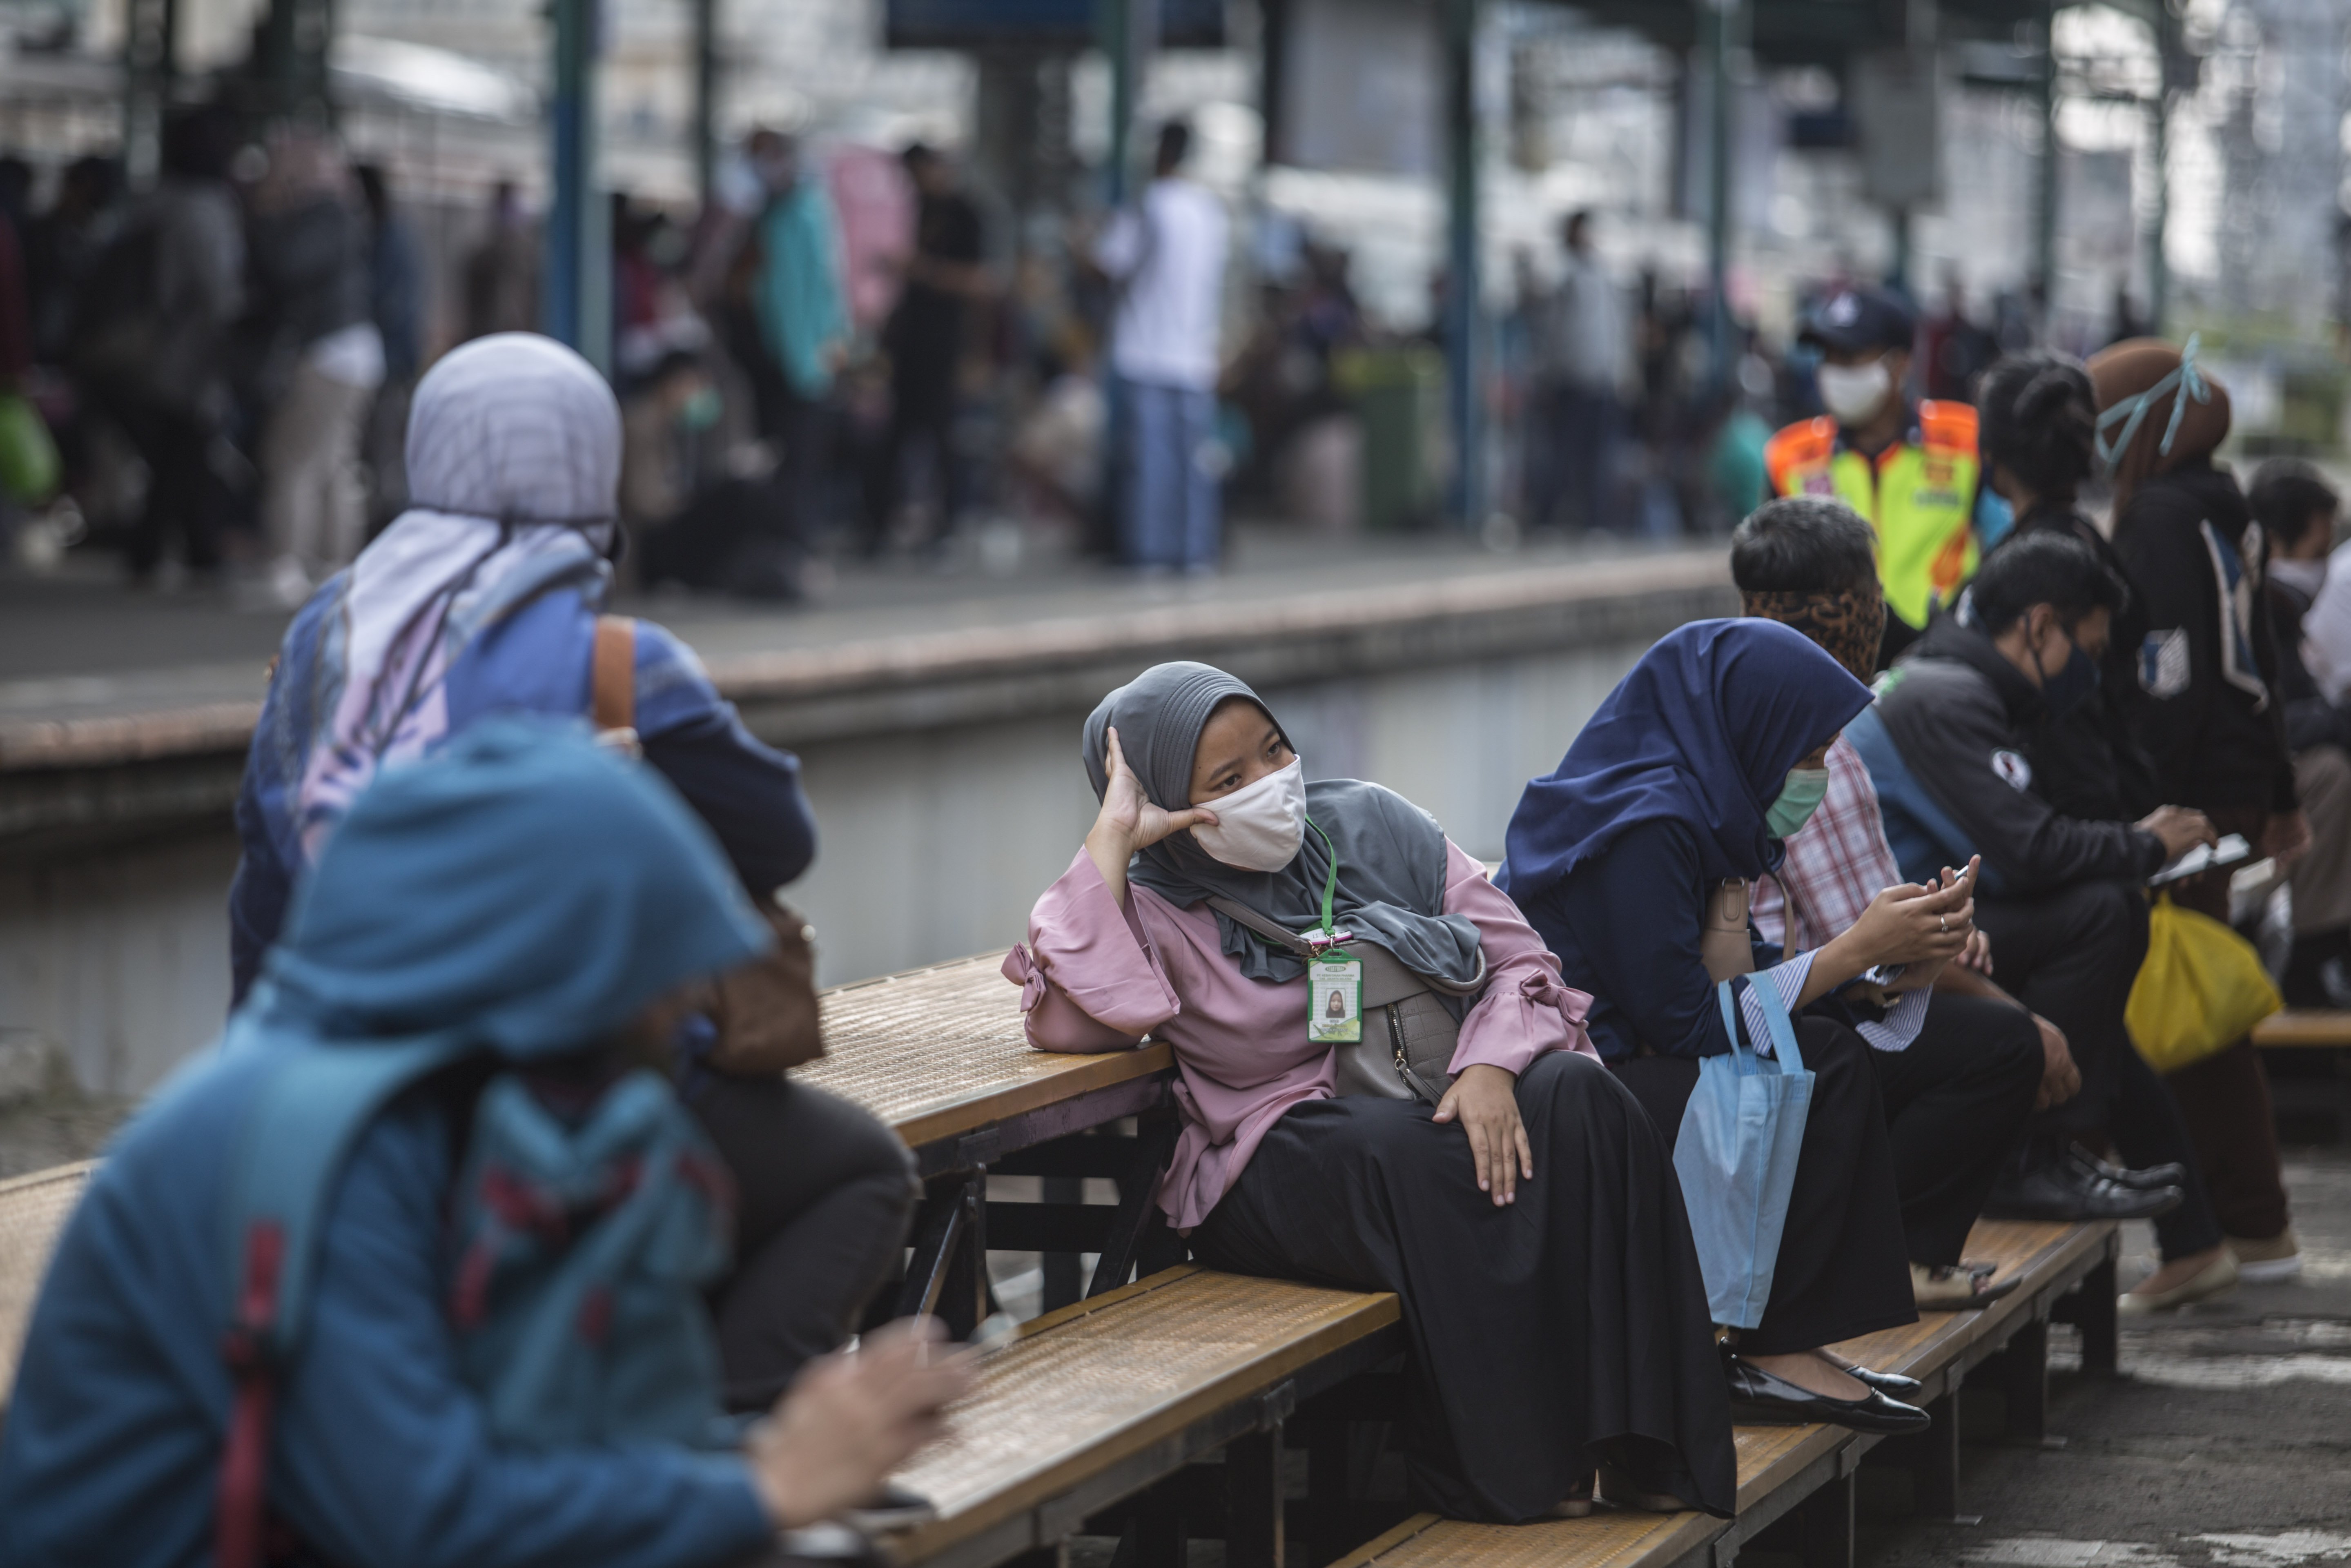 Sejumlah penumpang KRL menunggu kedatangan kereta di Stasiun Manggarai, Jakarta Pusat, Selasa (14/4/2020). Semenjak pemberlakuan Pembatasan Sosial Bersekala Besar (PSBB) di DKI Jakarta pada 10 April 2020, warga pengguna moda transportasi KRL masih terpantau ramai.